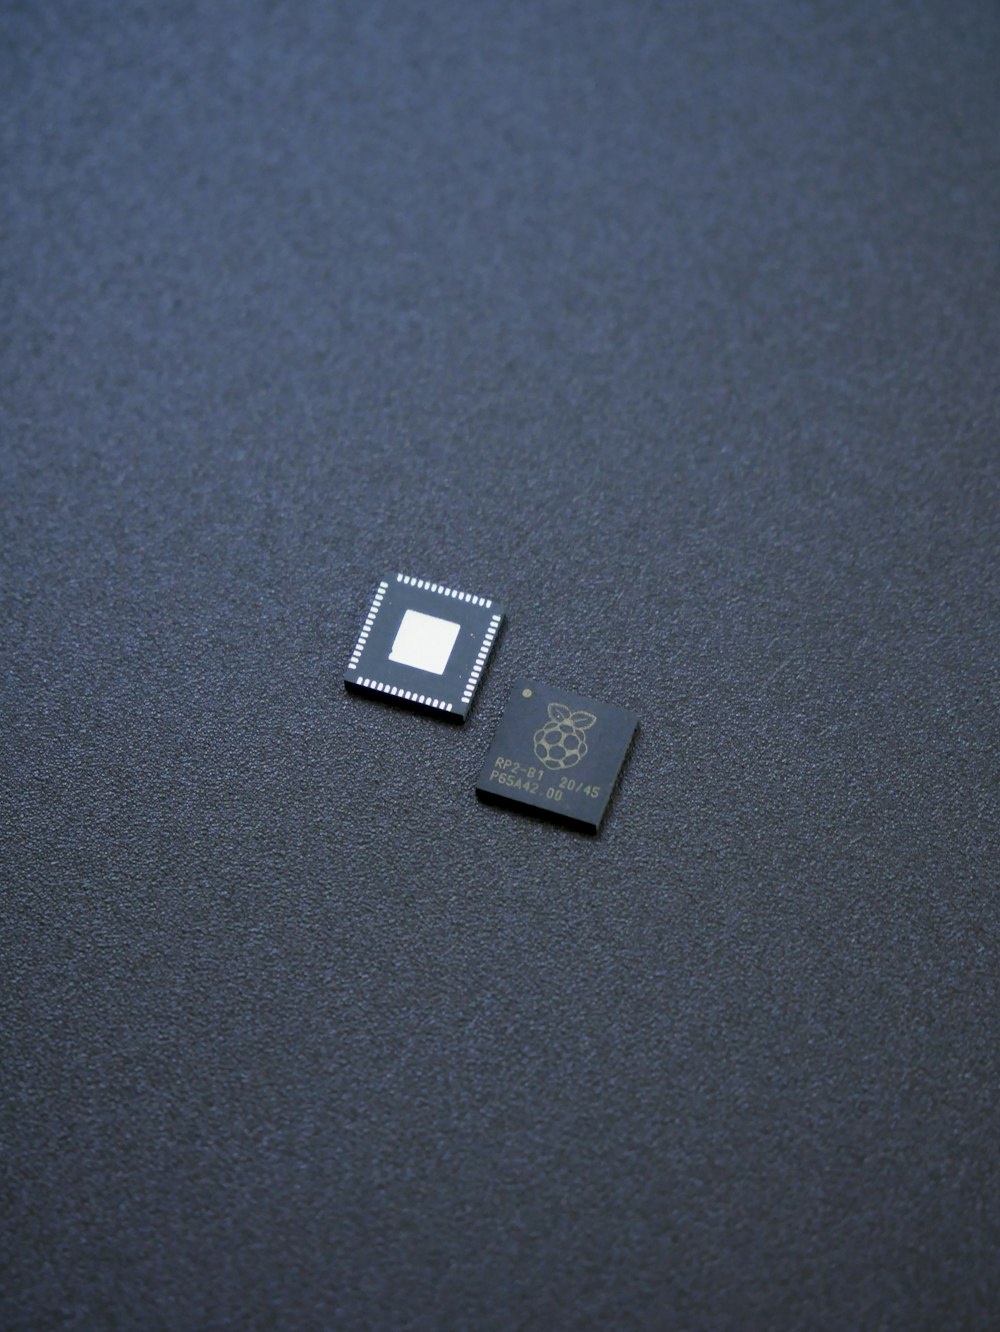 테이블 위에 놓인 마이크로 프로세서 칩